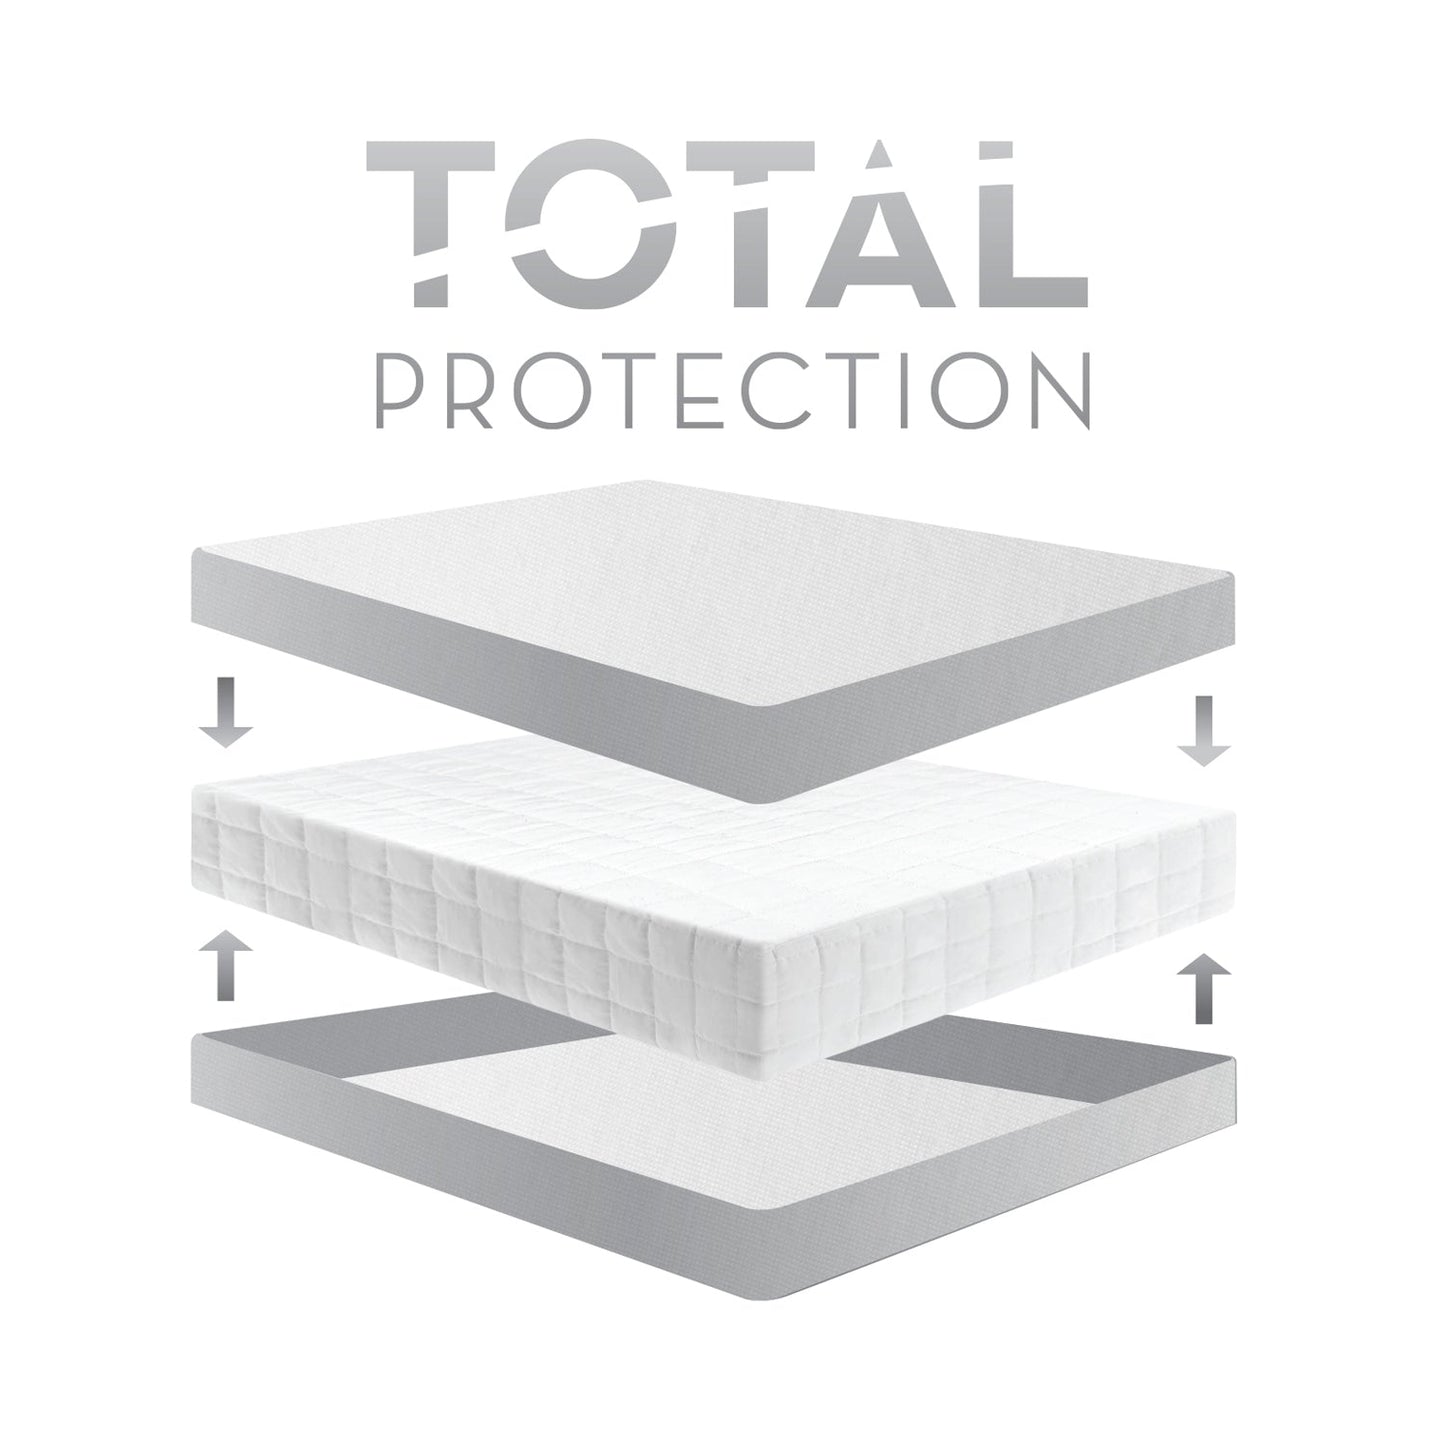 Encase LT/HD Mattress Protector